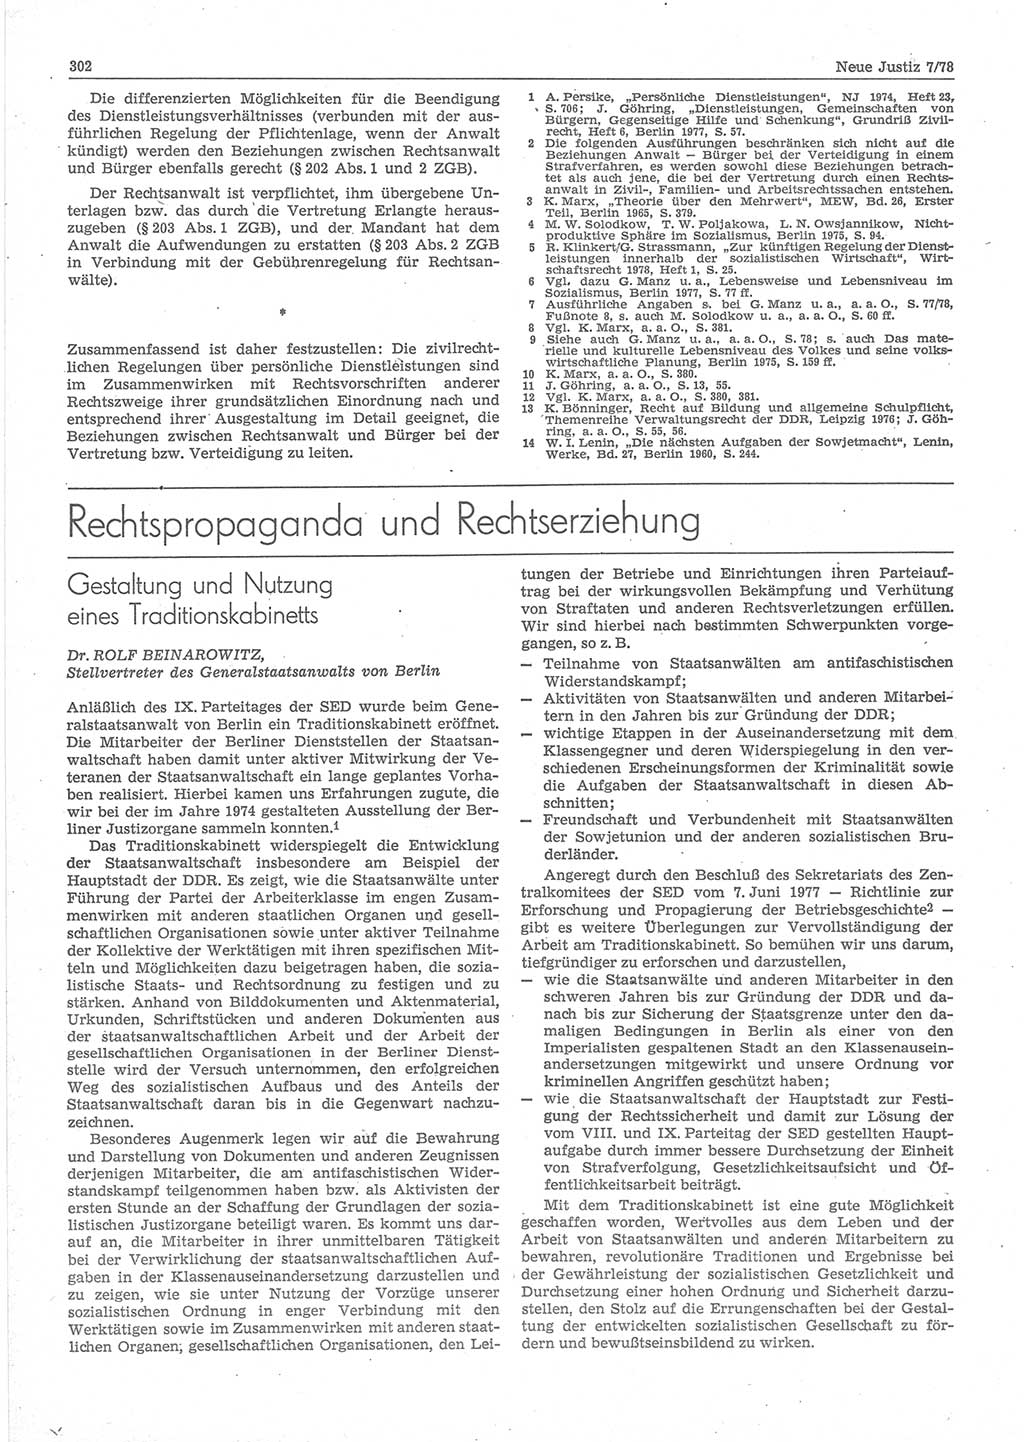 Neue Justiz (NJ), Zeitschrift für sozialistisches Recht und Gesetzlichkeit [Deutsche Demokratische Republik (DDR)], 32. Jahrgang 1978, Seite 302 (NJ DDR 1978, S. 302)